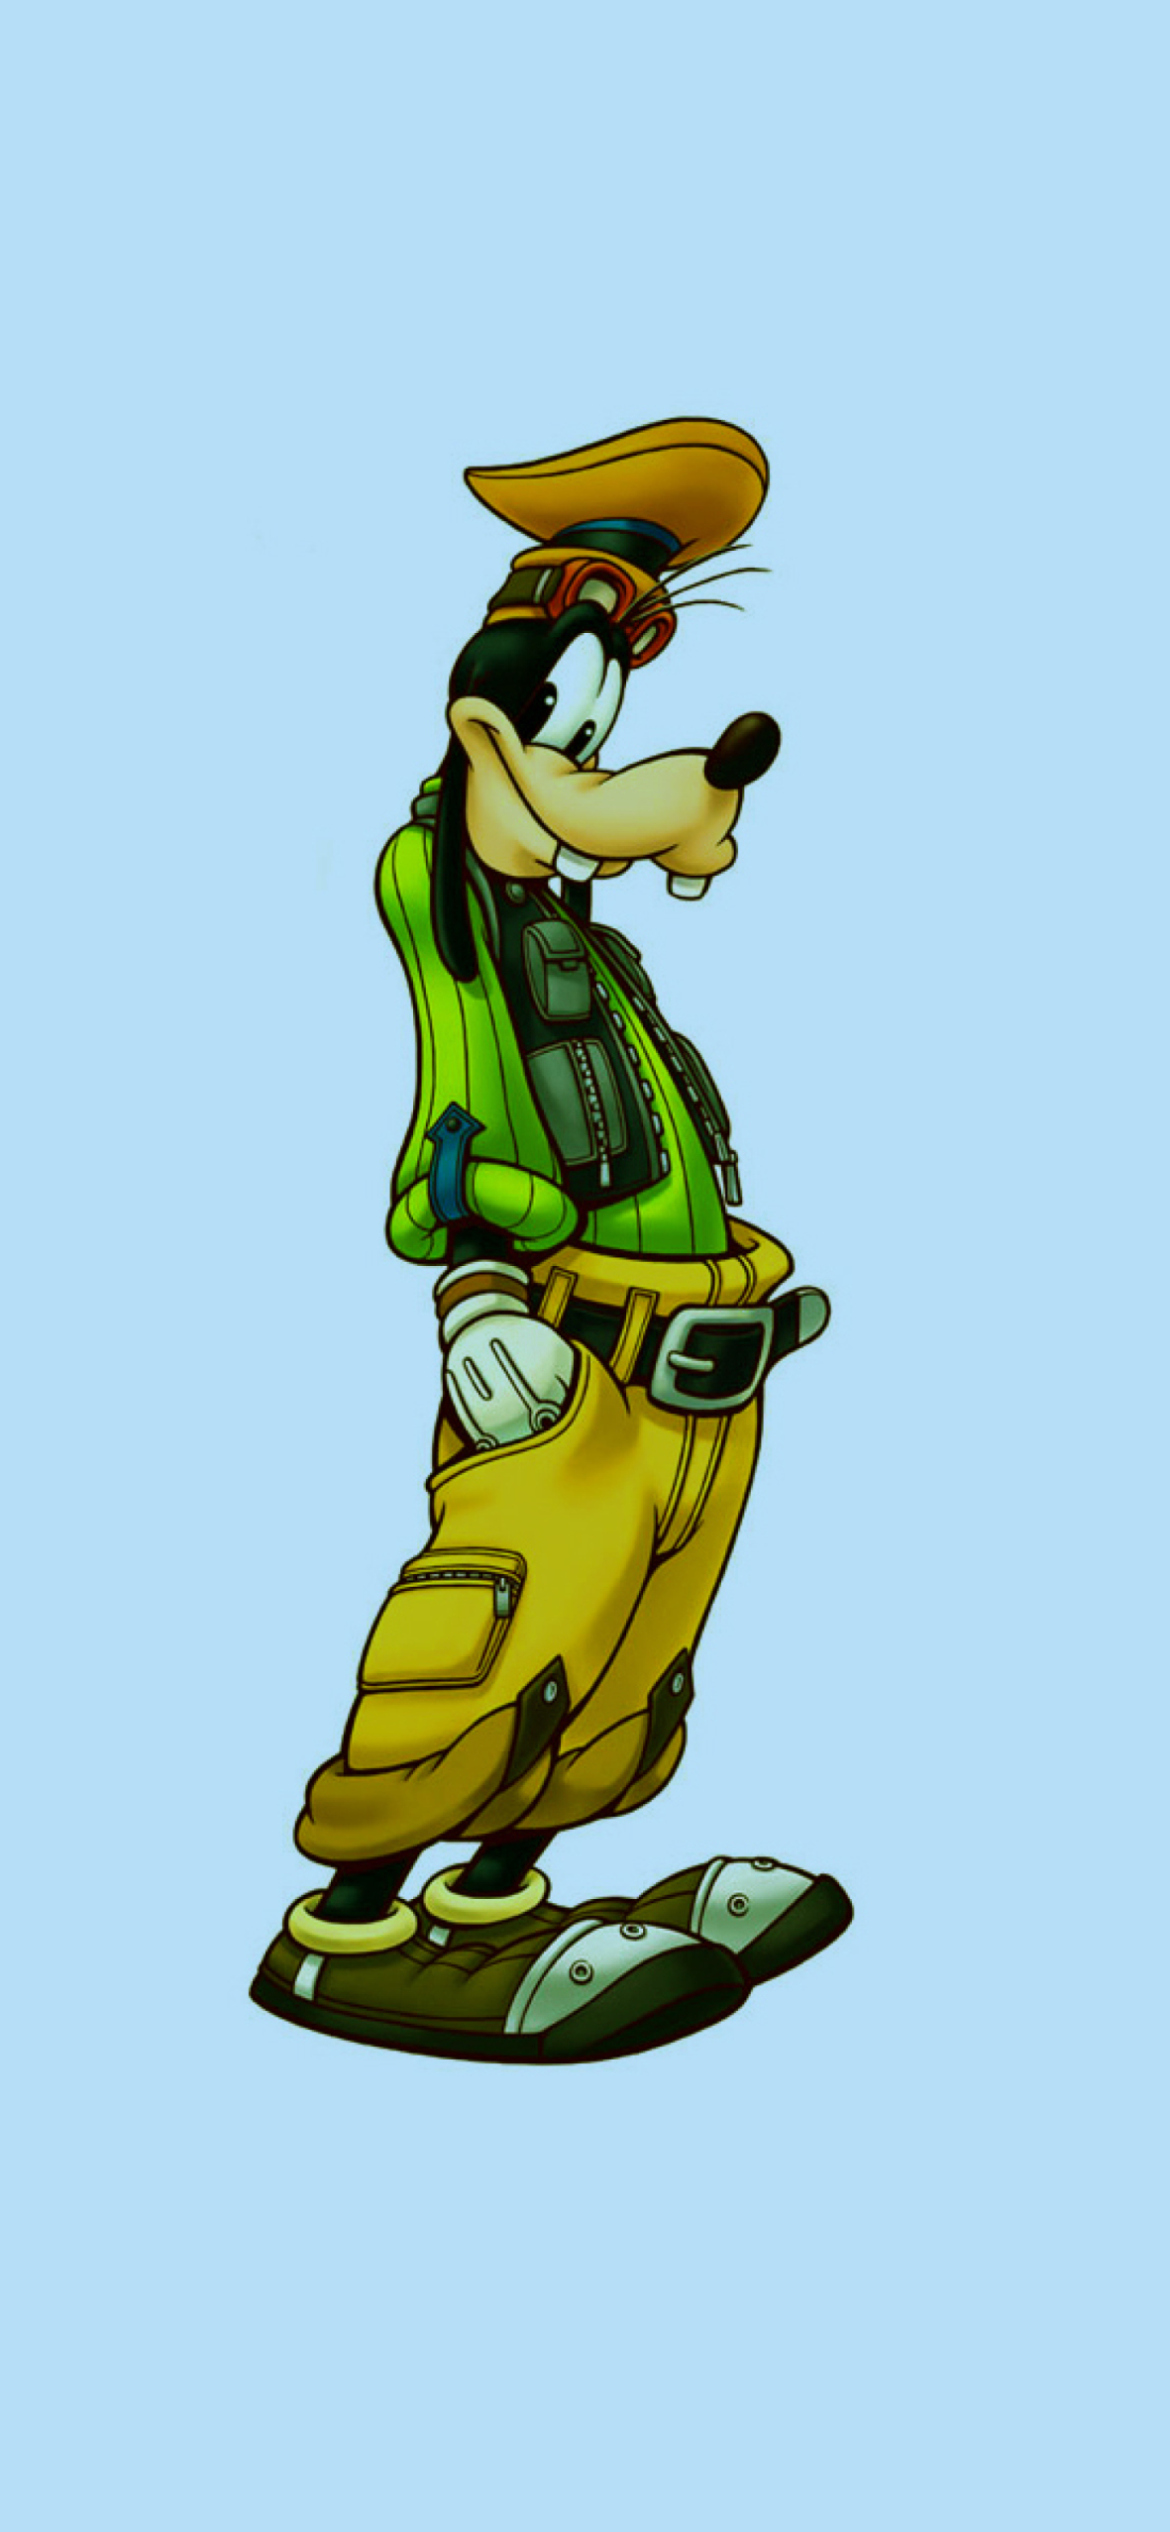 Das Goof - Walt Disney Cartoon Character Wallpaper 1170x2532